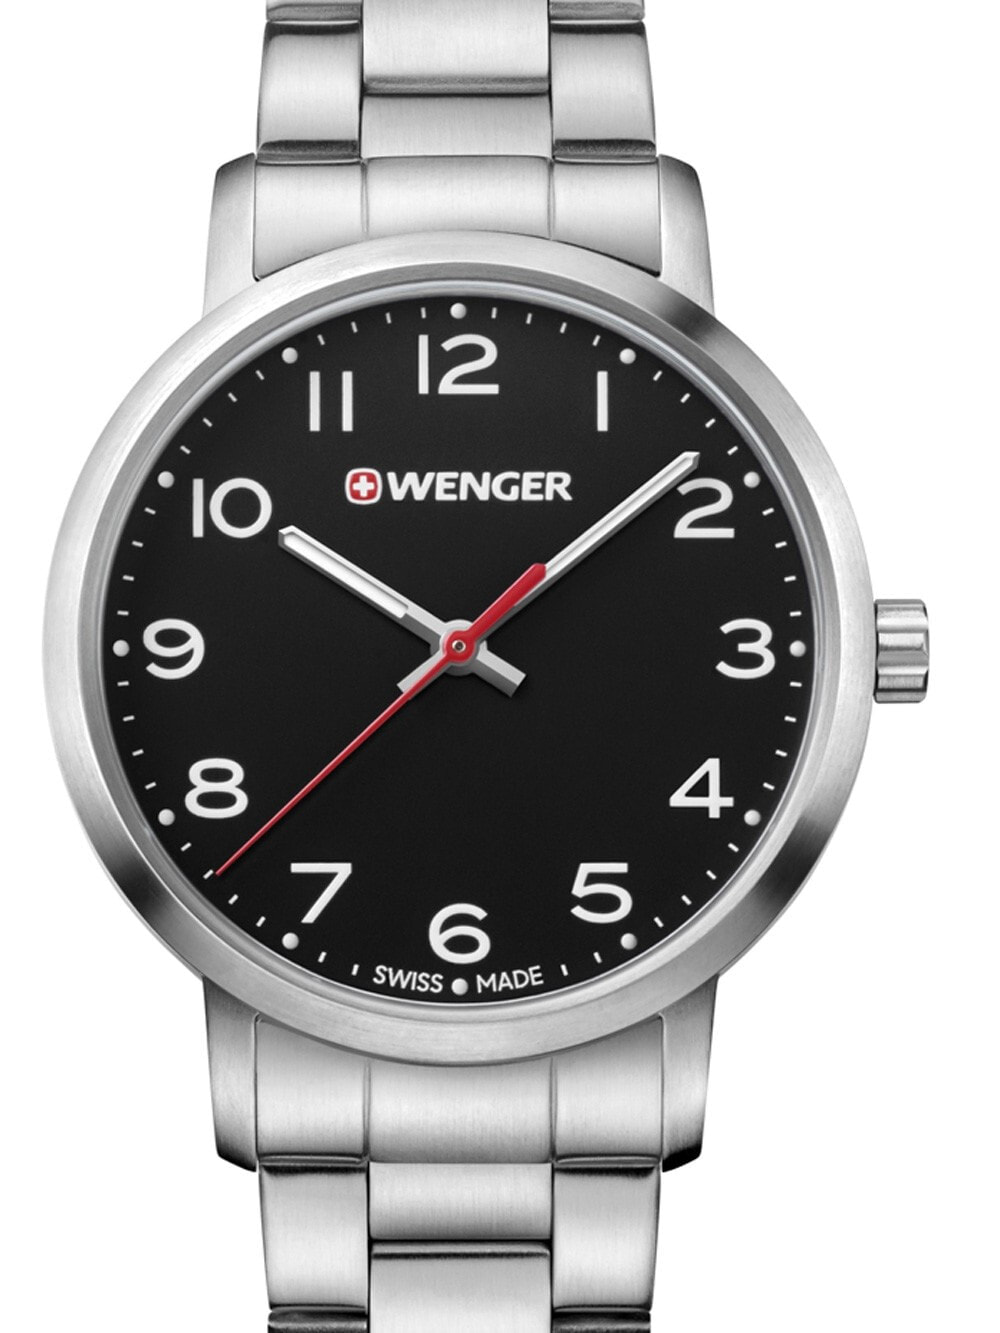 Женские наручные кварцевые часы Wenger ремешок из нержавеющей стали. Водонепроницаемость-10 АТМ. Защитное от царапин минеральное стекло с сапфировым покрытием.